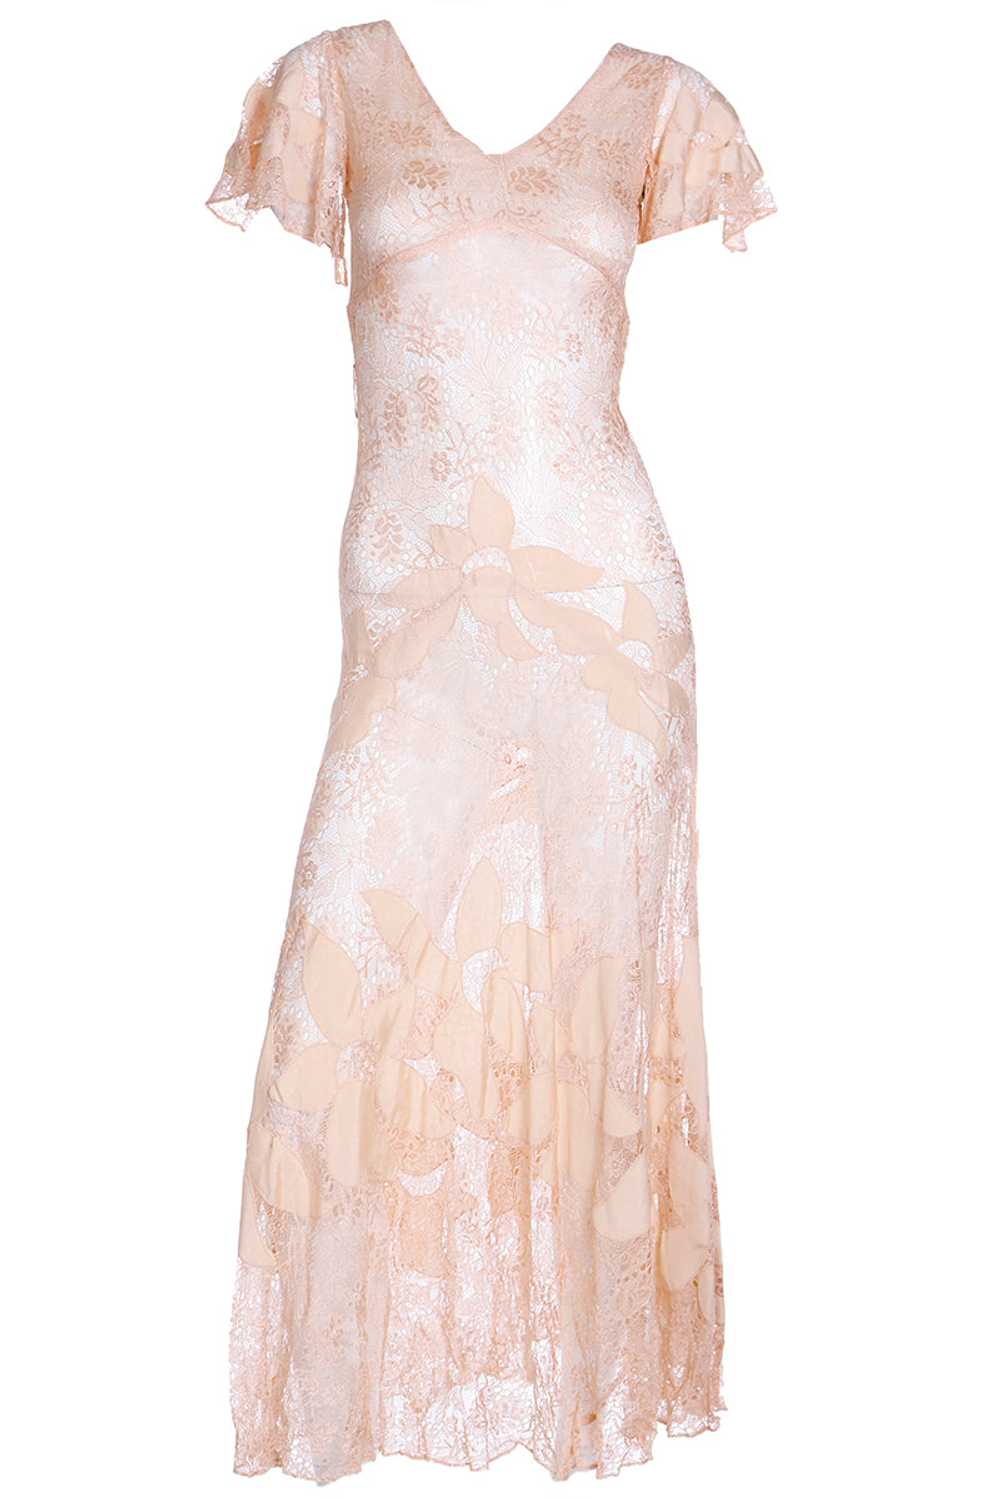 1930s Peach Lace Vintage Dress w/ Silk Floral App… - image 1